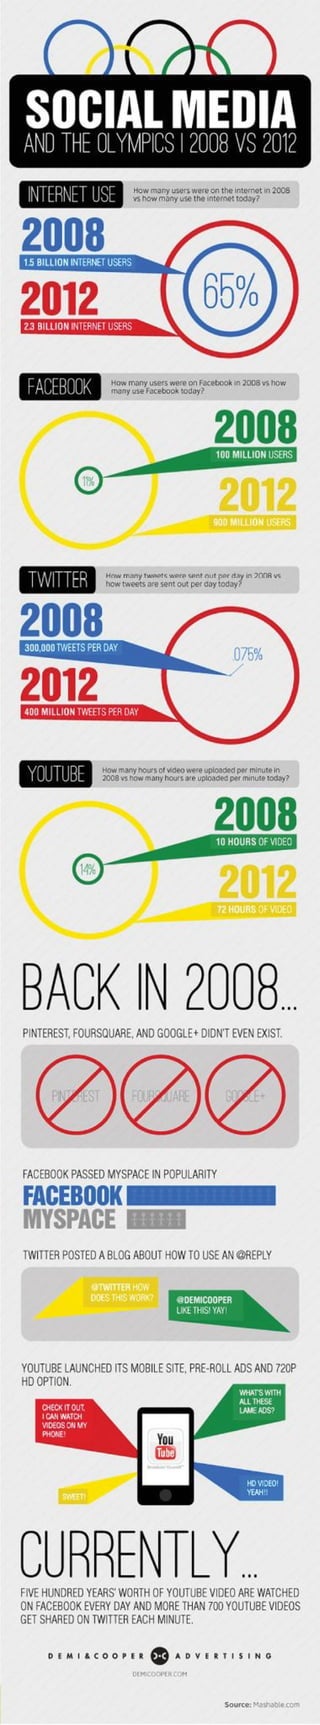 Social Media & The Olympics 2008 VS 2012